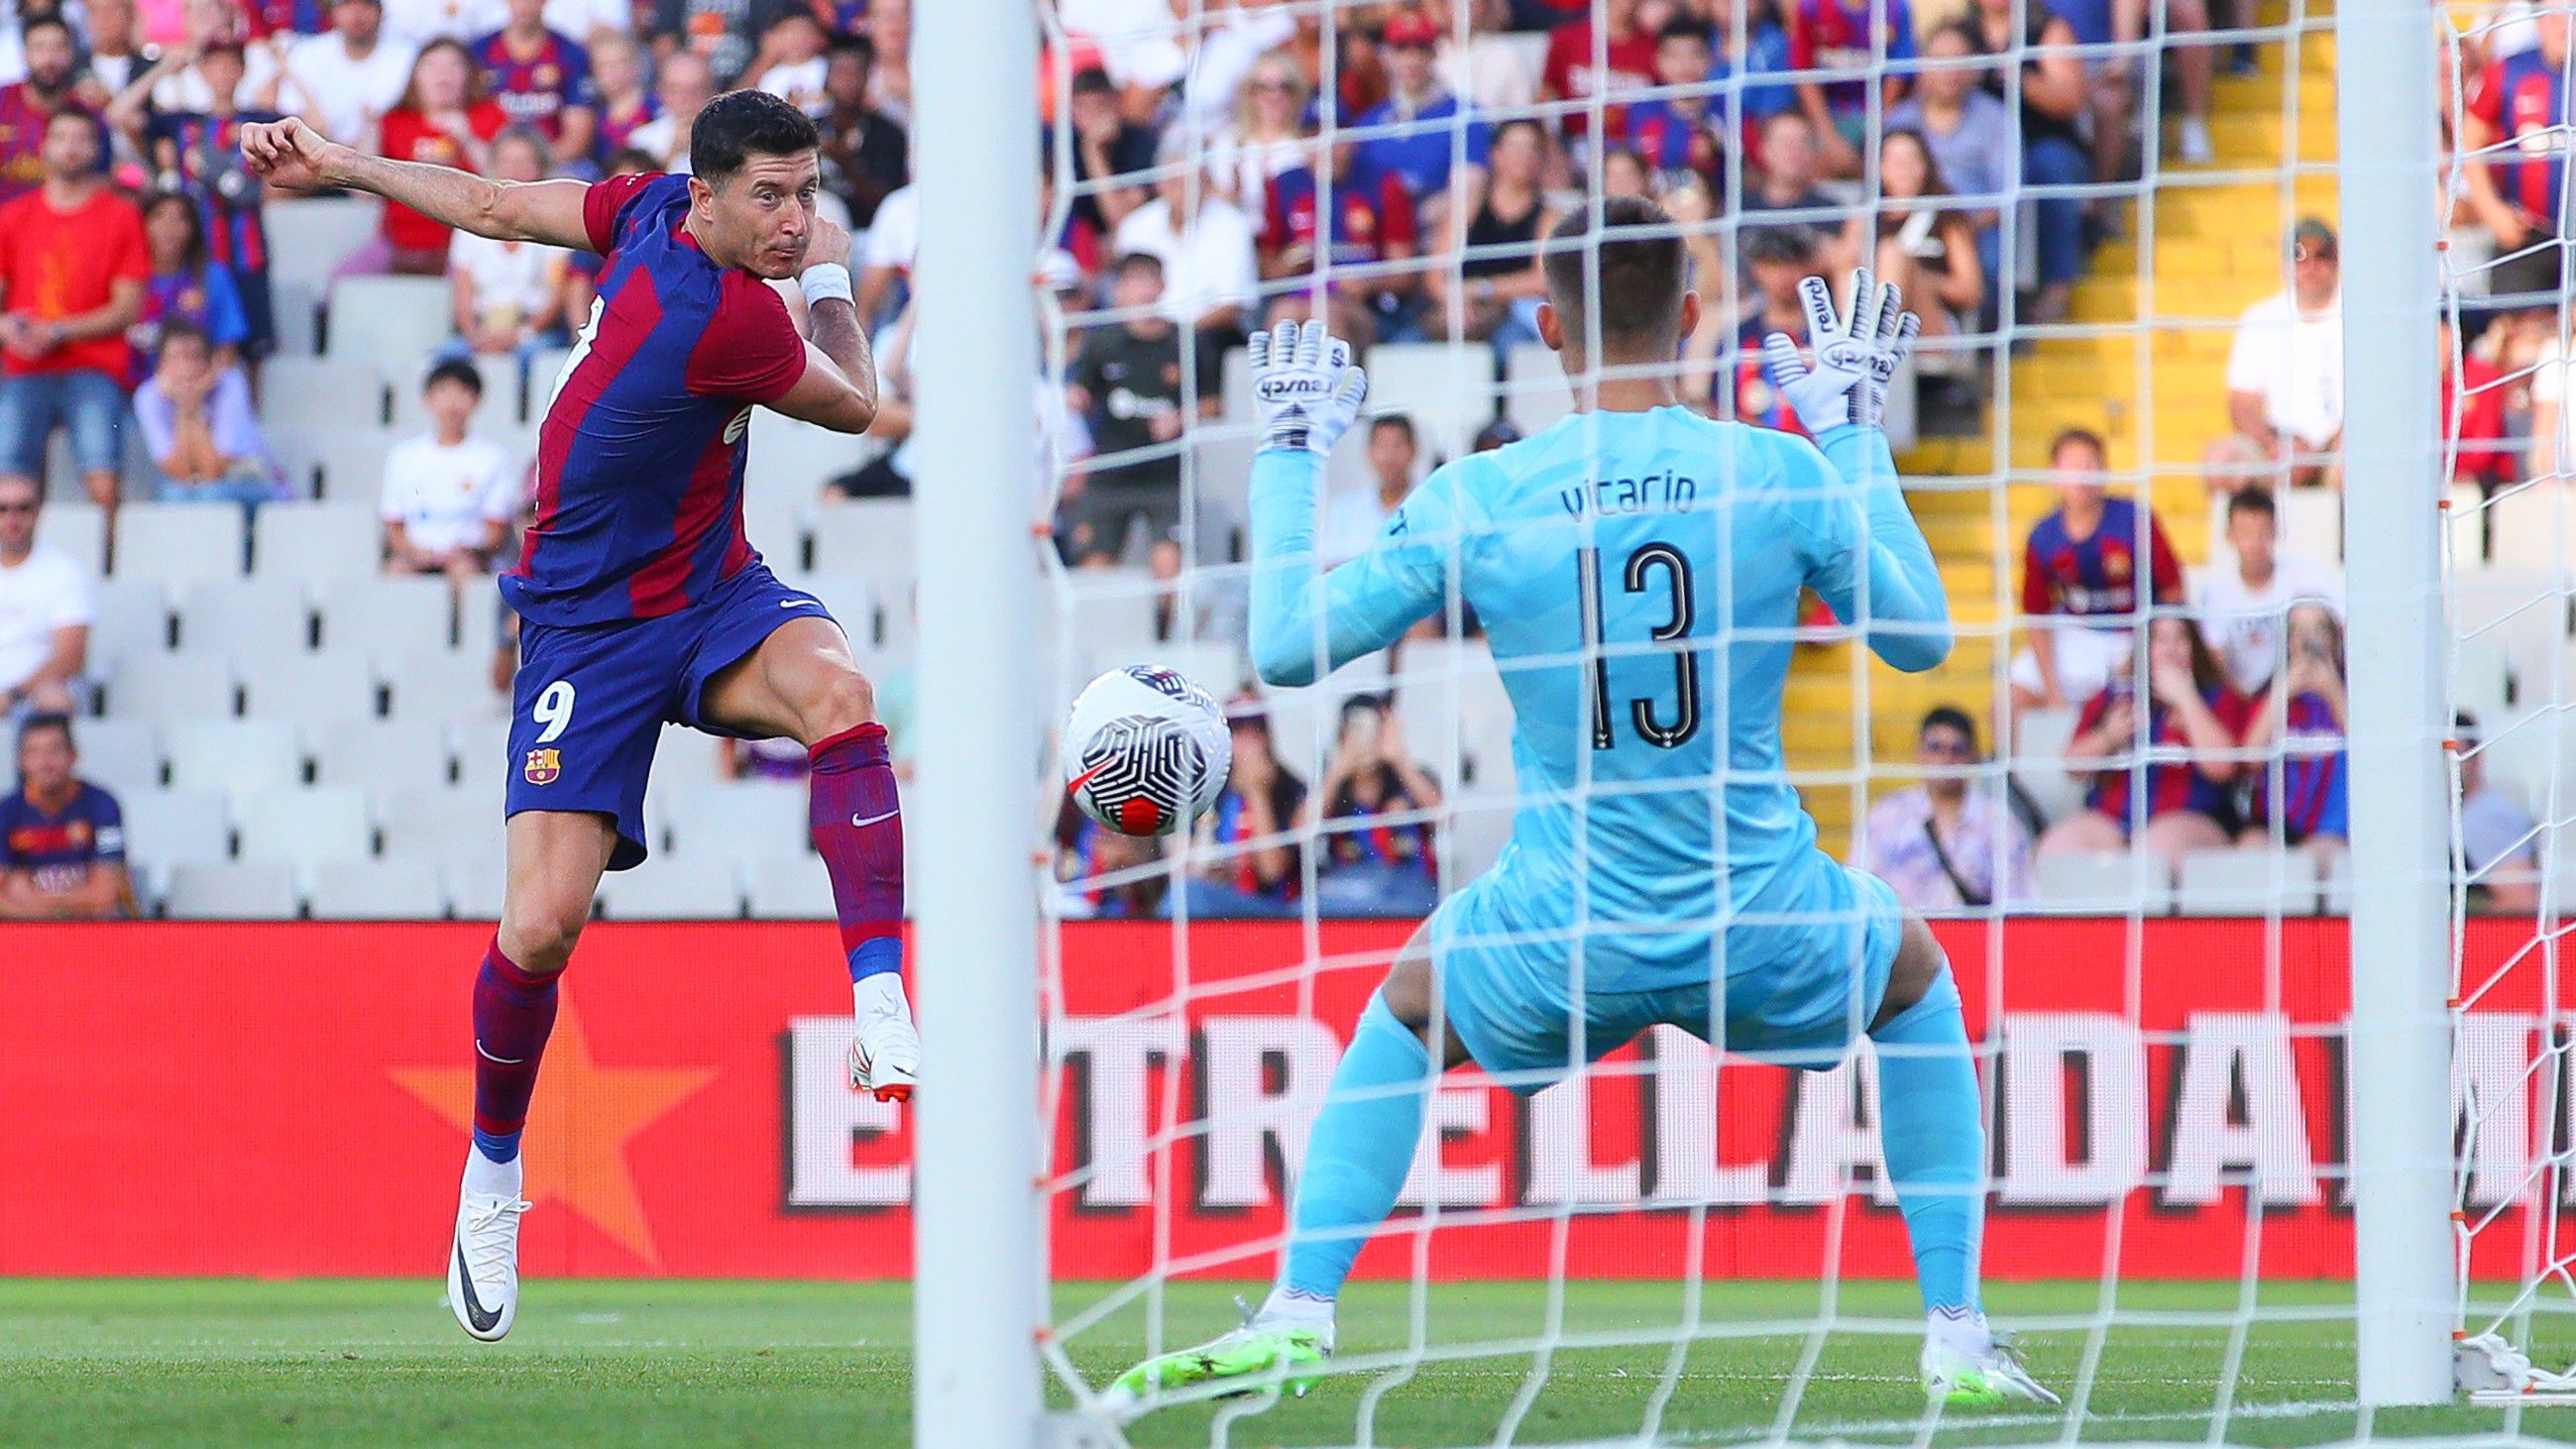 A Barcelona a hajrában fordított a Kane-t nélkülöző Tottenham ellen